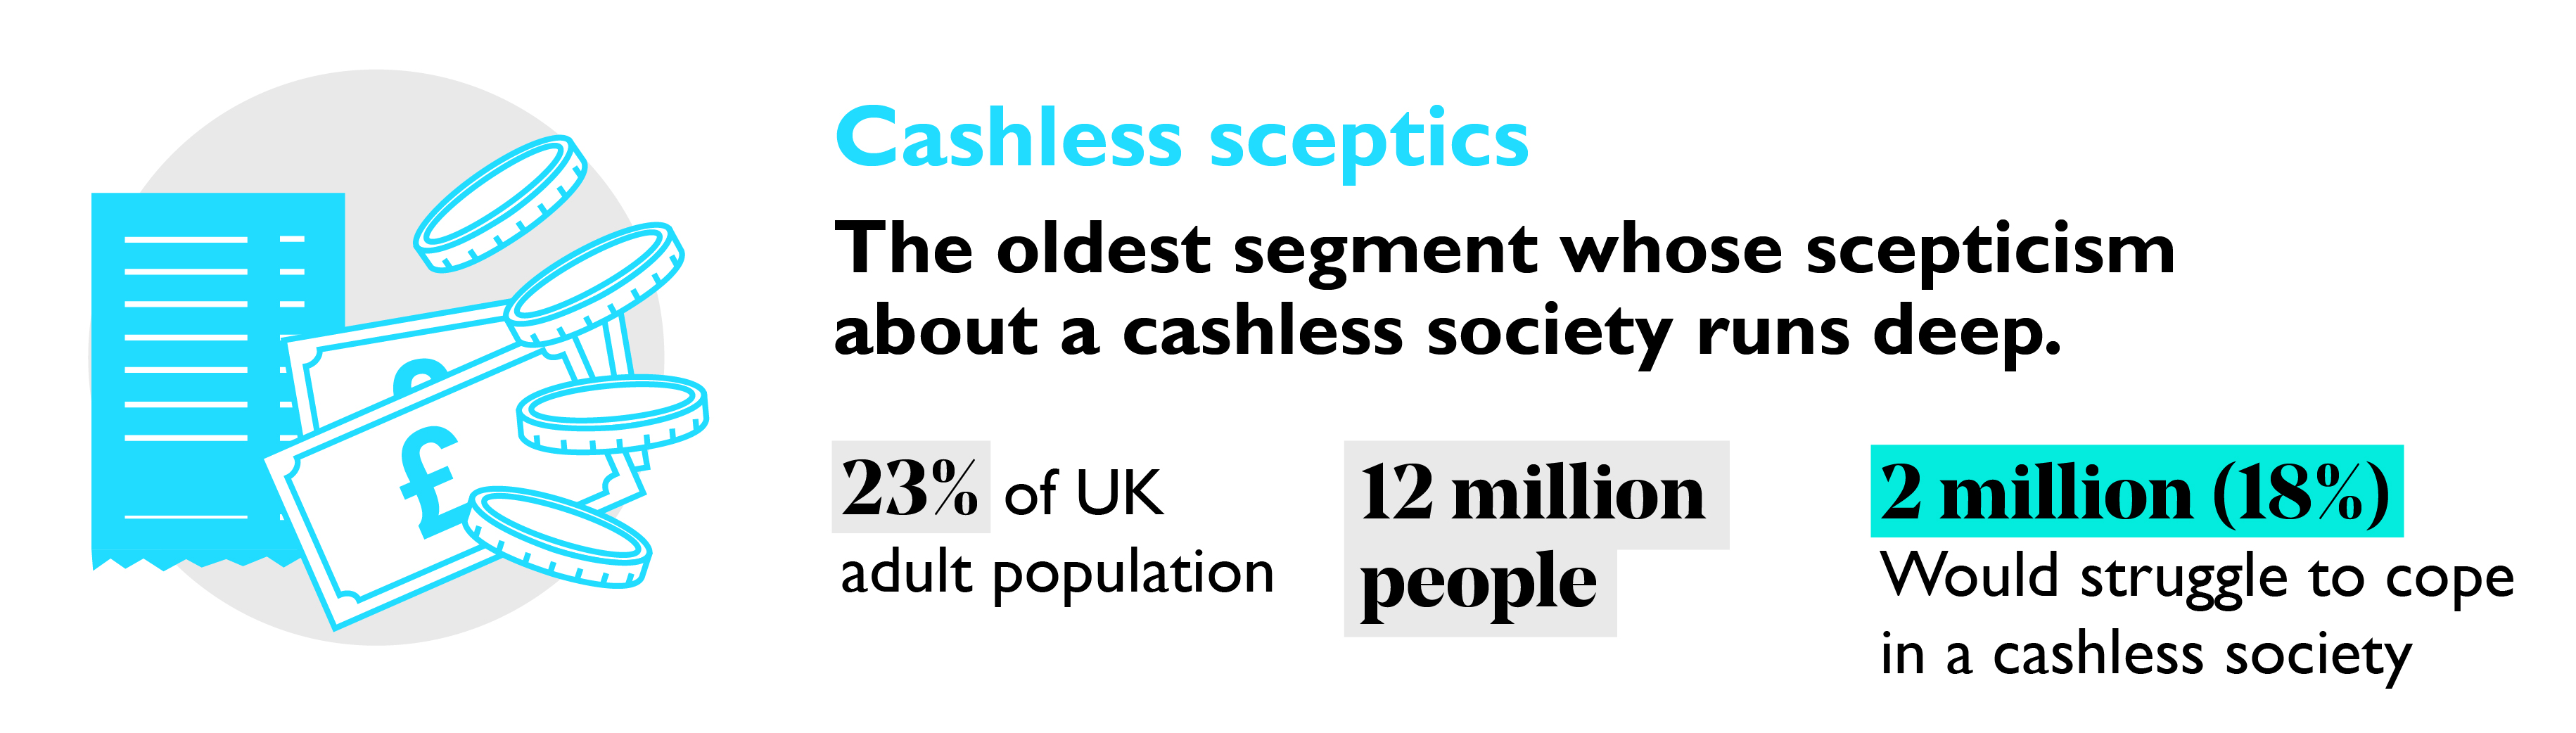 Cashless sceptics